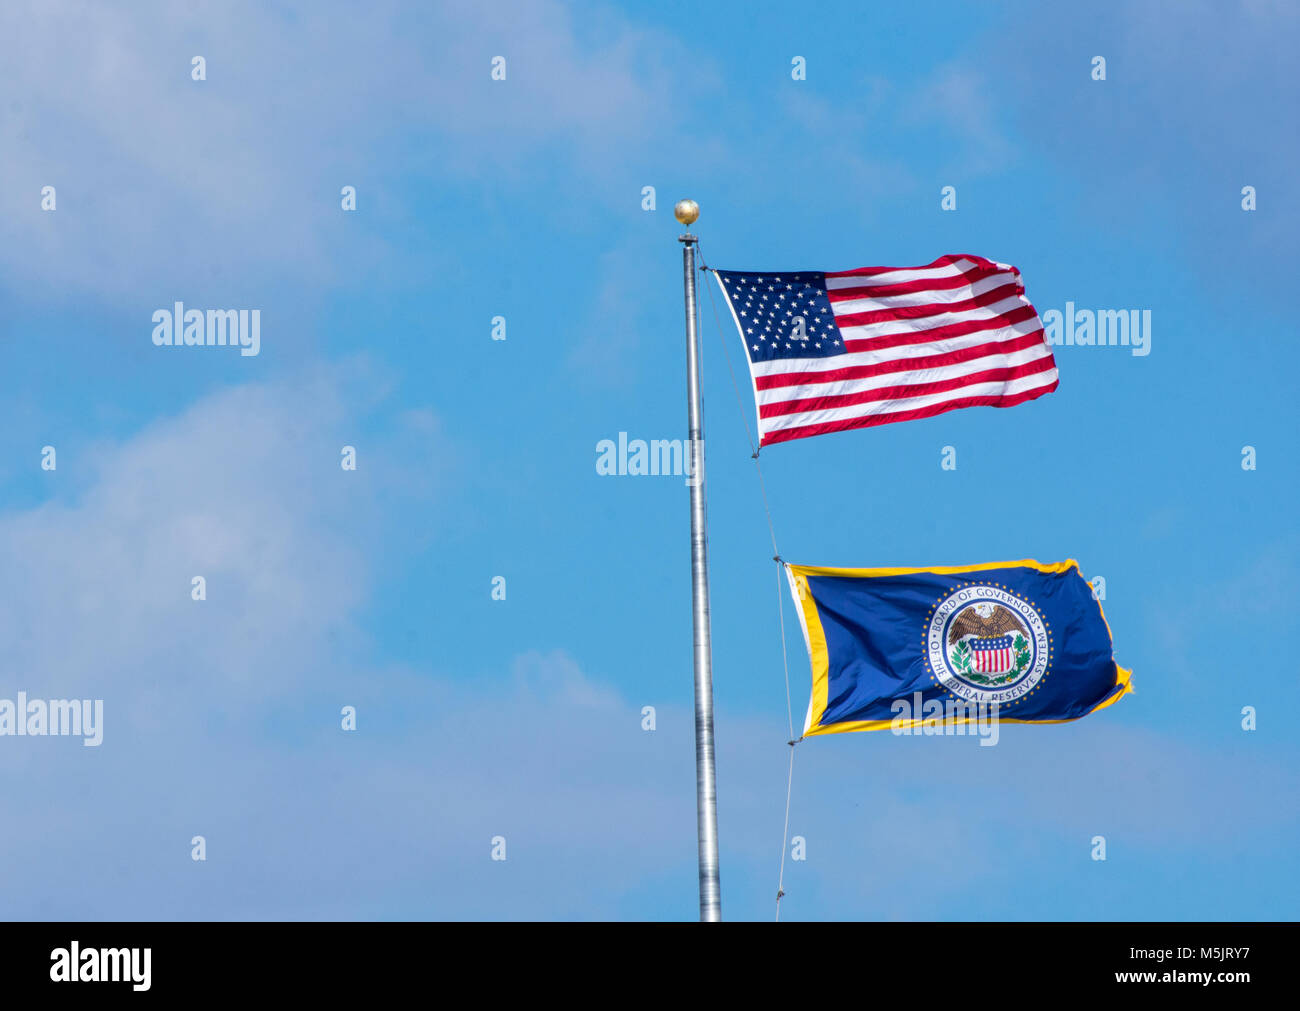 Flagge der Federal Reserve fliegt unter der UNO-Flagge Staaten bei der Federal Reserve Sitz in Washington DC. Stockfoto